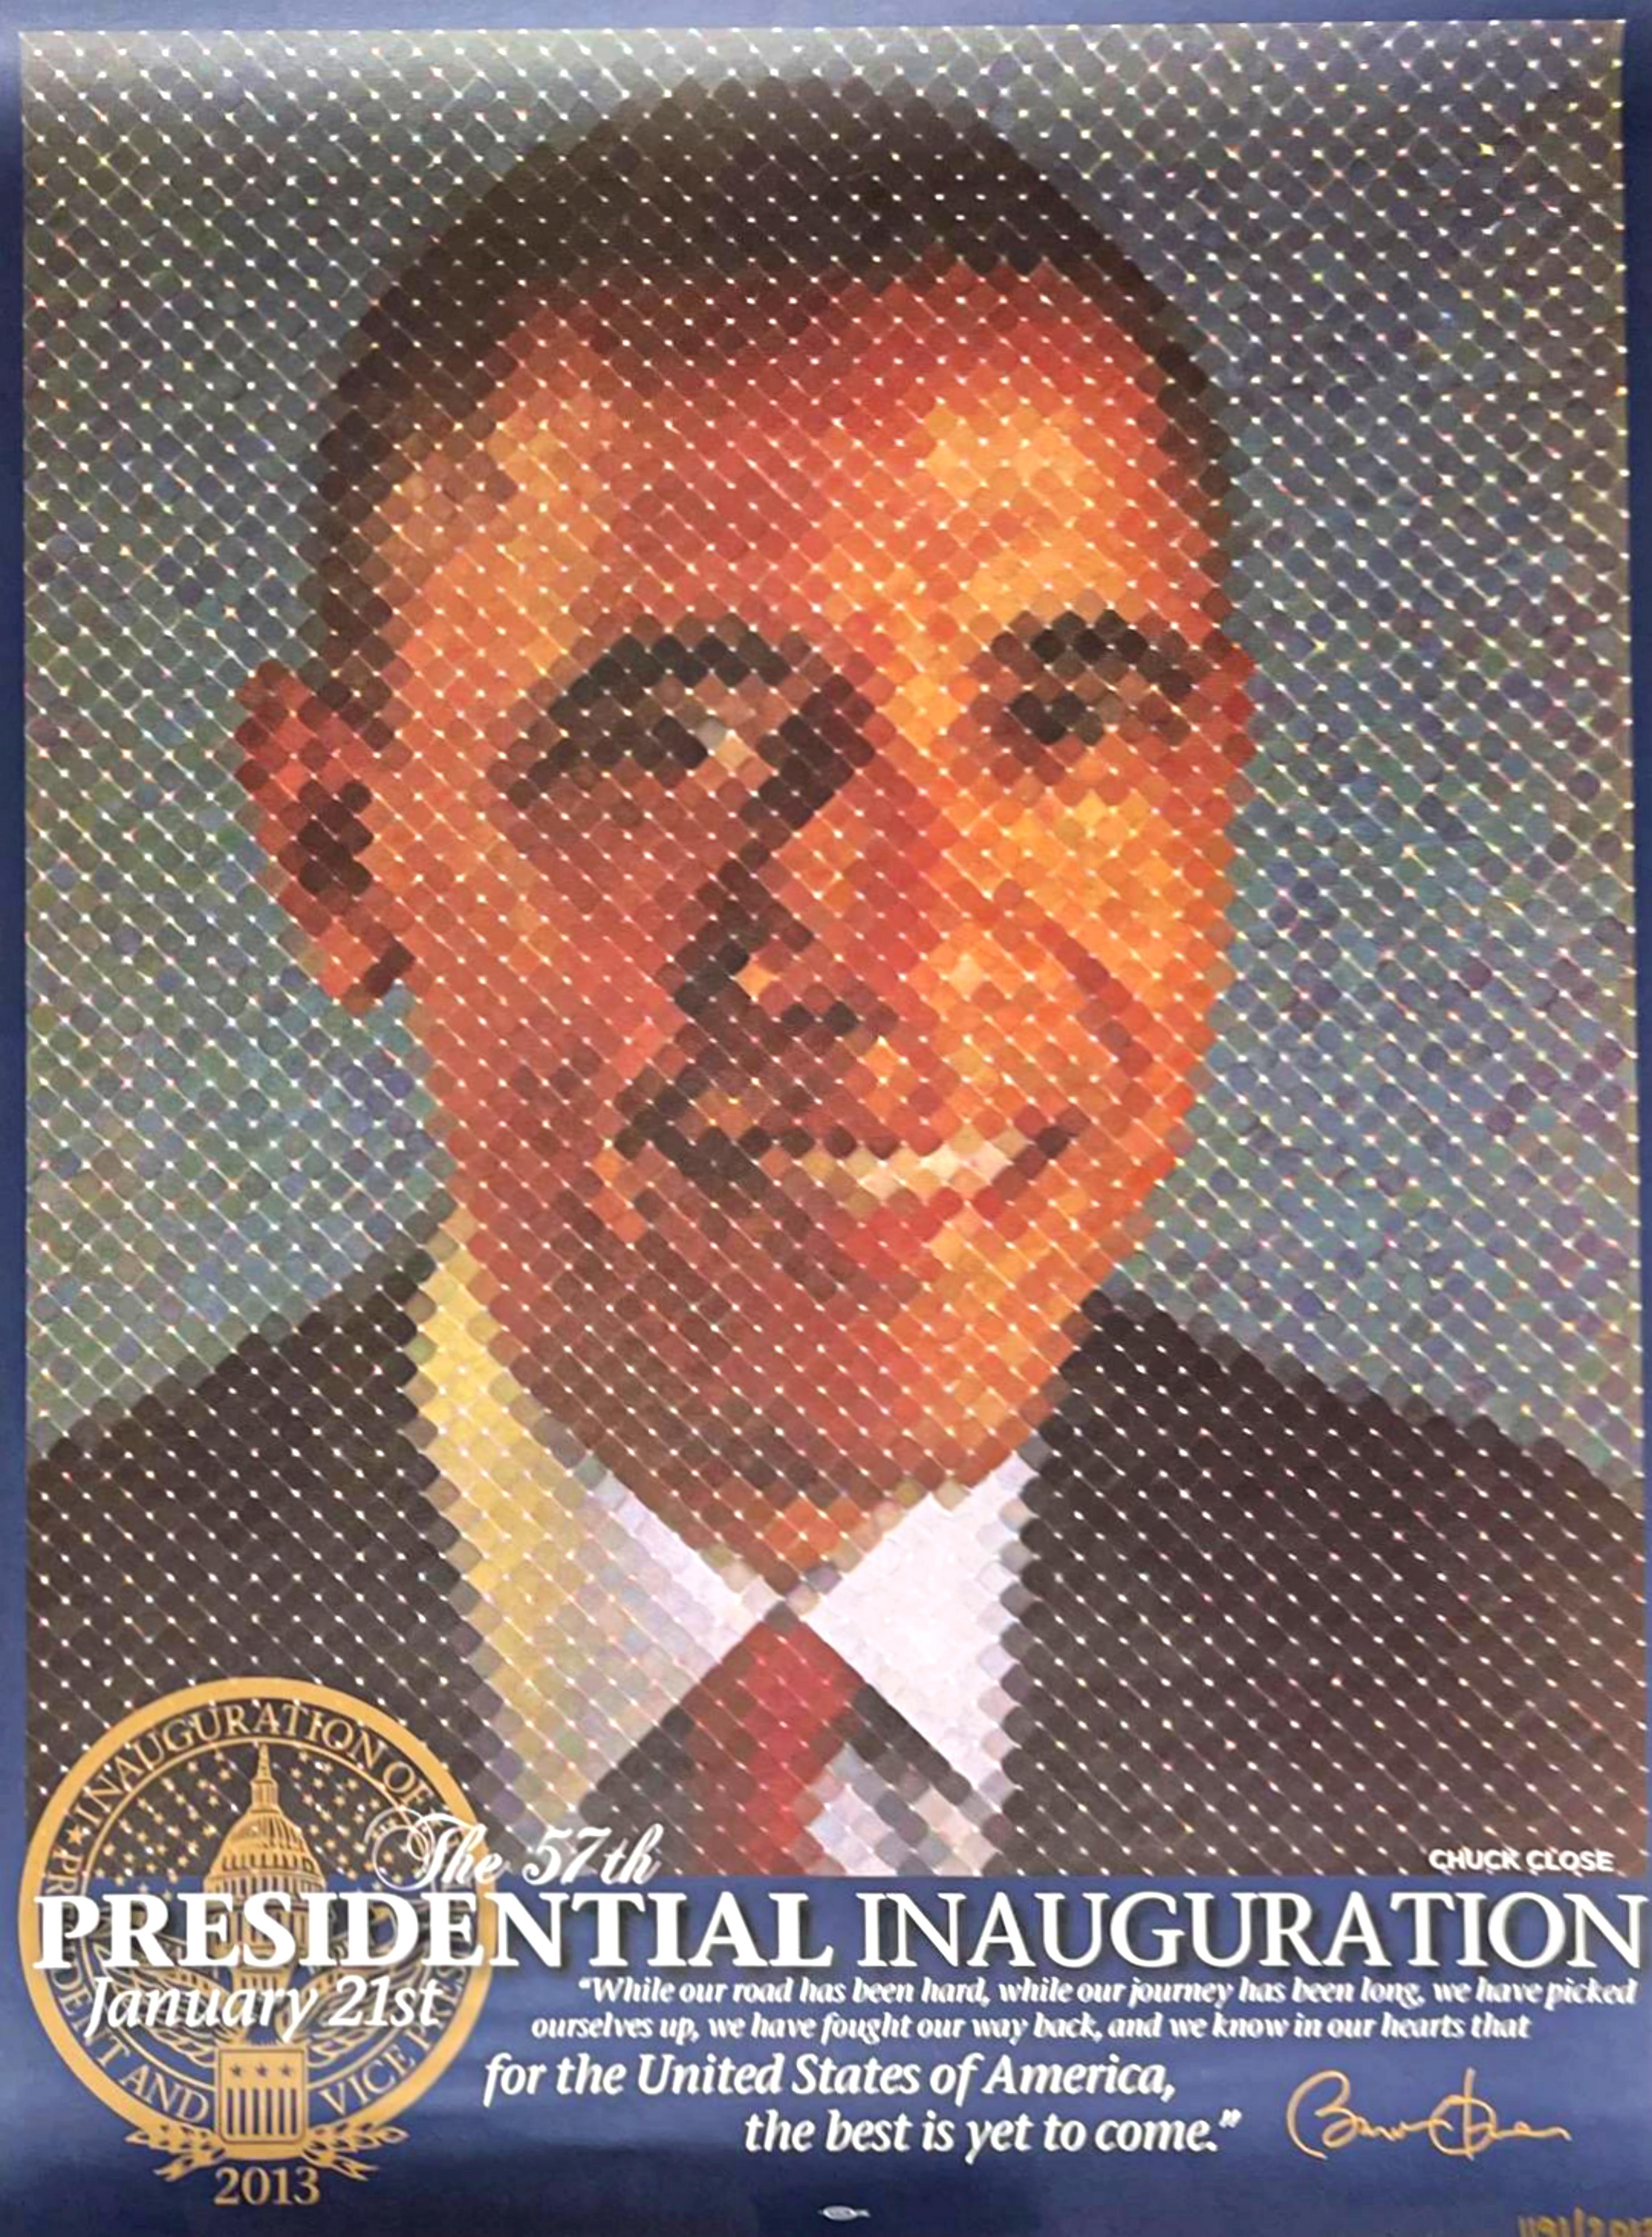 La 57e inauguration présidentielle, édition limitée, plaque signée Barack Obama 